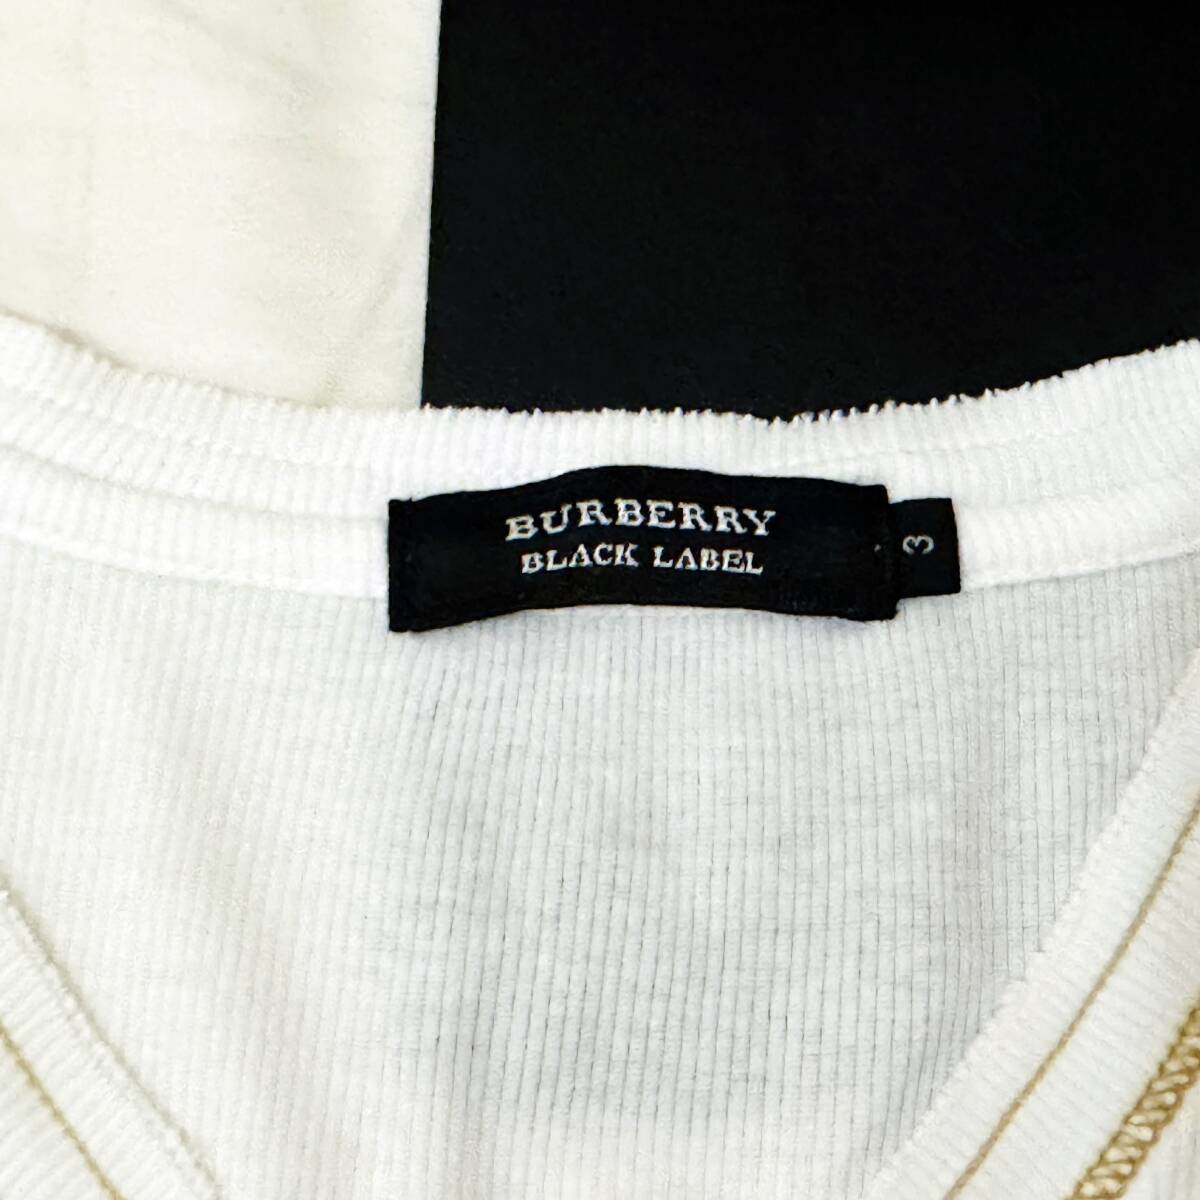  прекрасный товар редкость BURBERRY BLACK LABEL Burberry Black Label термический V шея футболка шланг вышивка белый золотой 3(L) сделано в Японии #2749